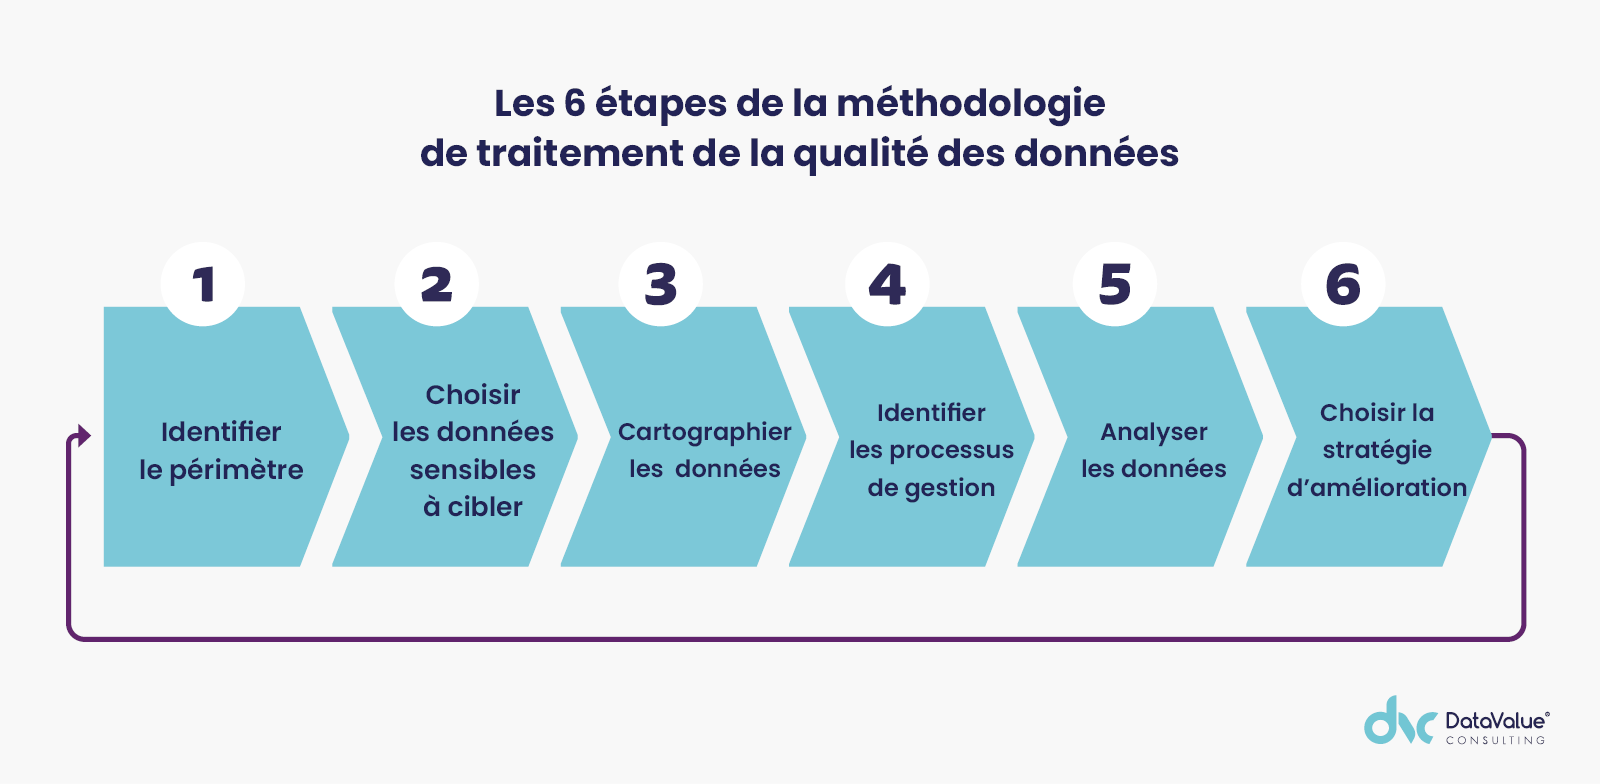 Les 6 étapes de la méthodologie de traitement de la qualité des données